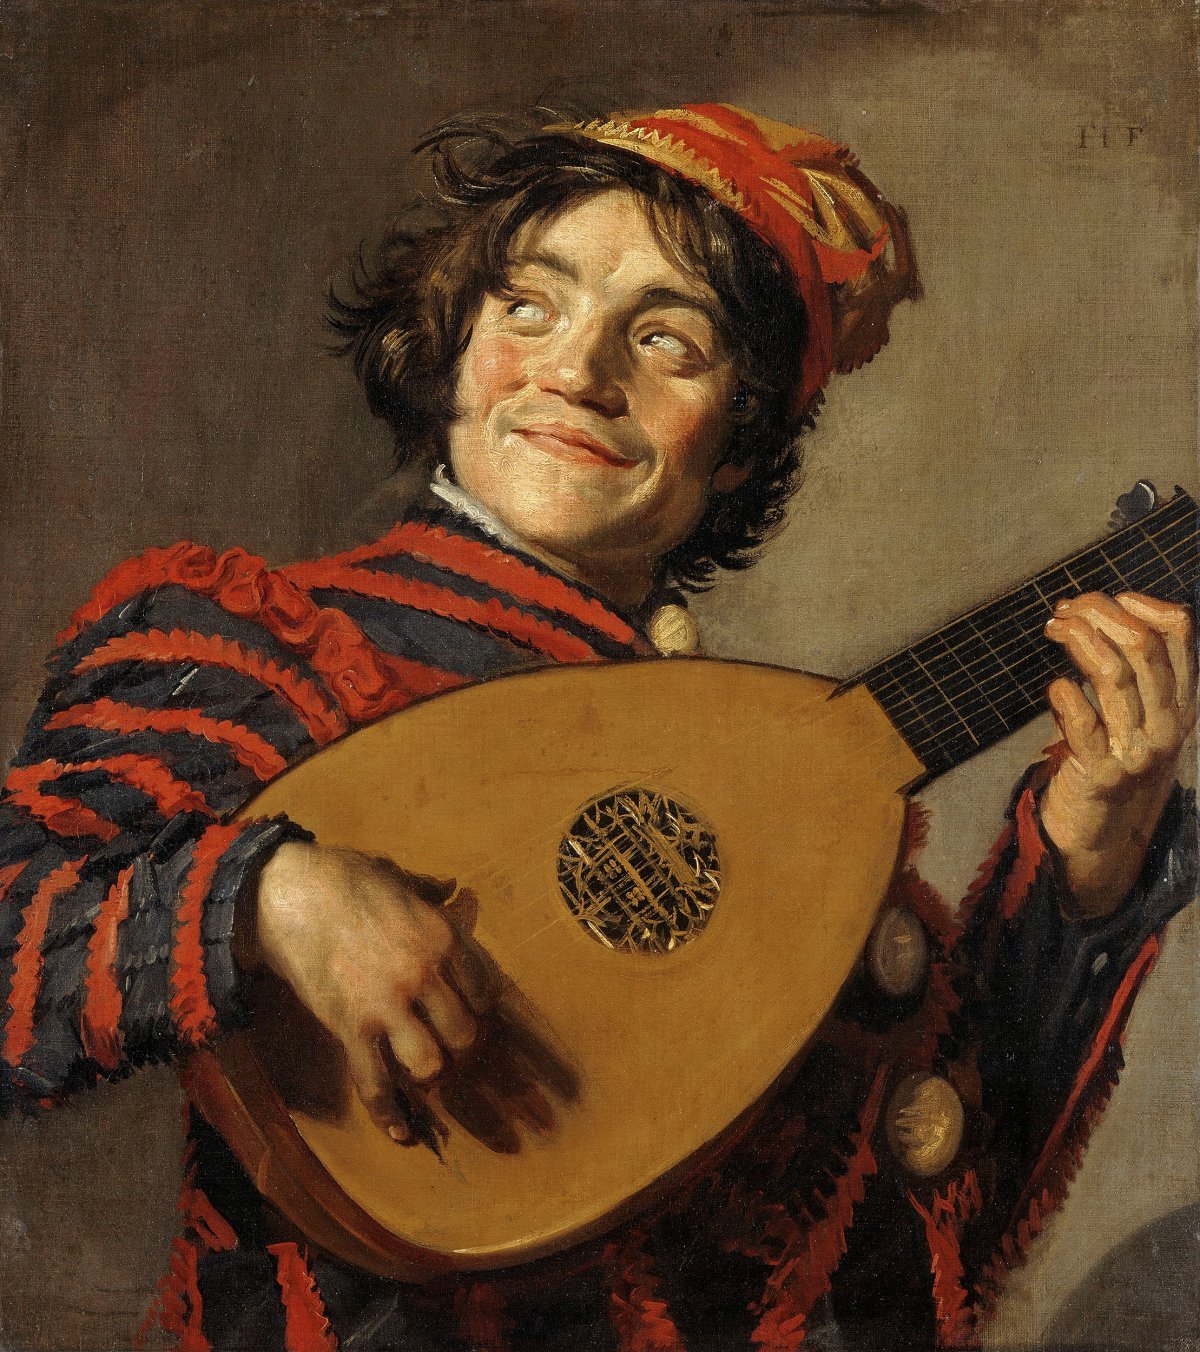 류트를 연주하는 사람, 1623년 경, 캔버스에 유채, 70 x 62 cm. 파리 루브르박물관 소장. 레익스미술관 제공